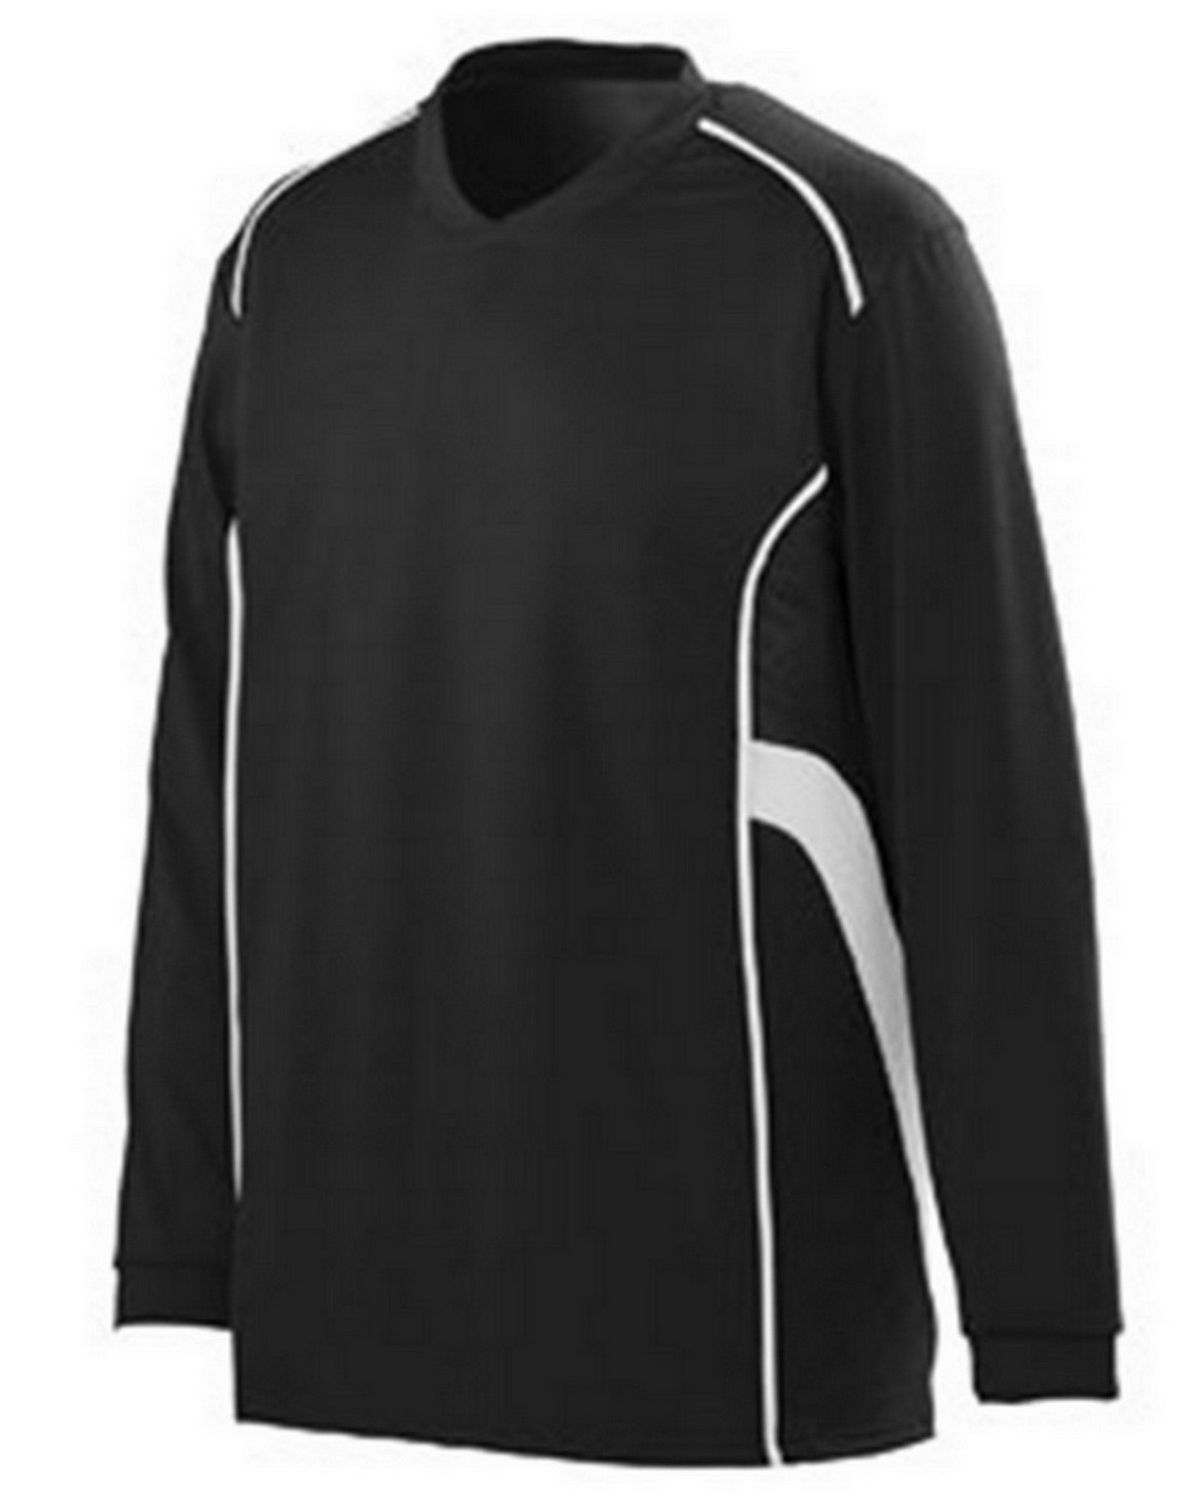 Augusta Sportswear 1085 Men's Winning Streak Long-Sleeve Jersey